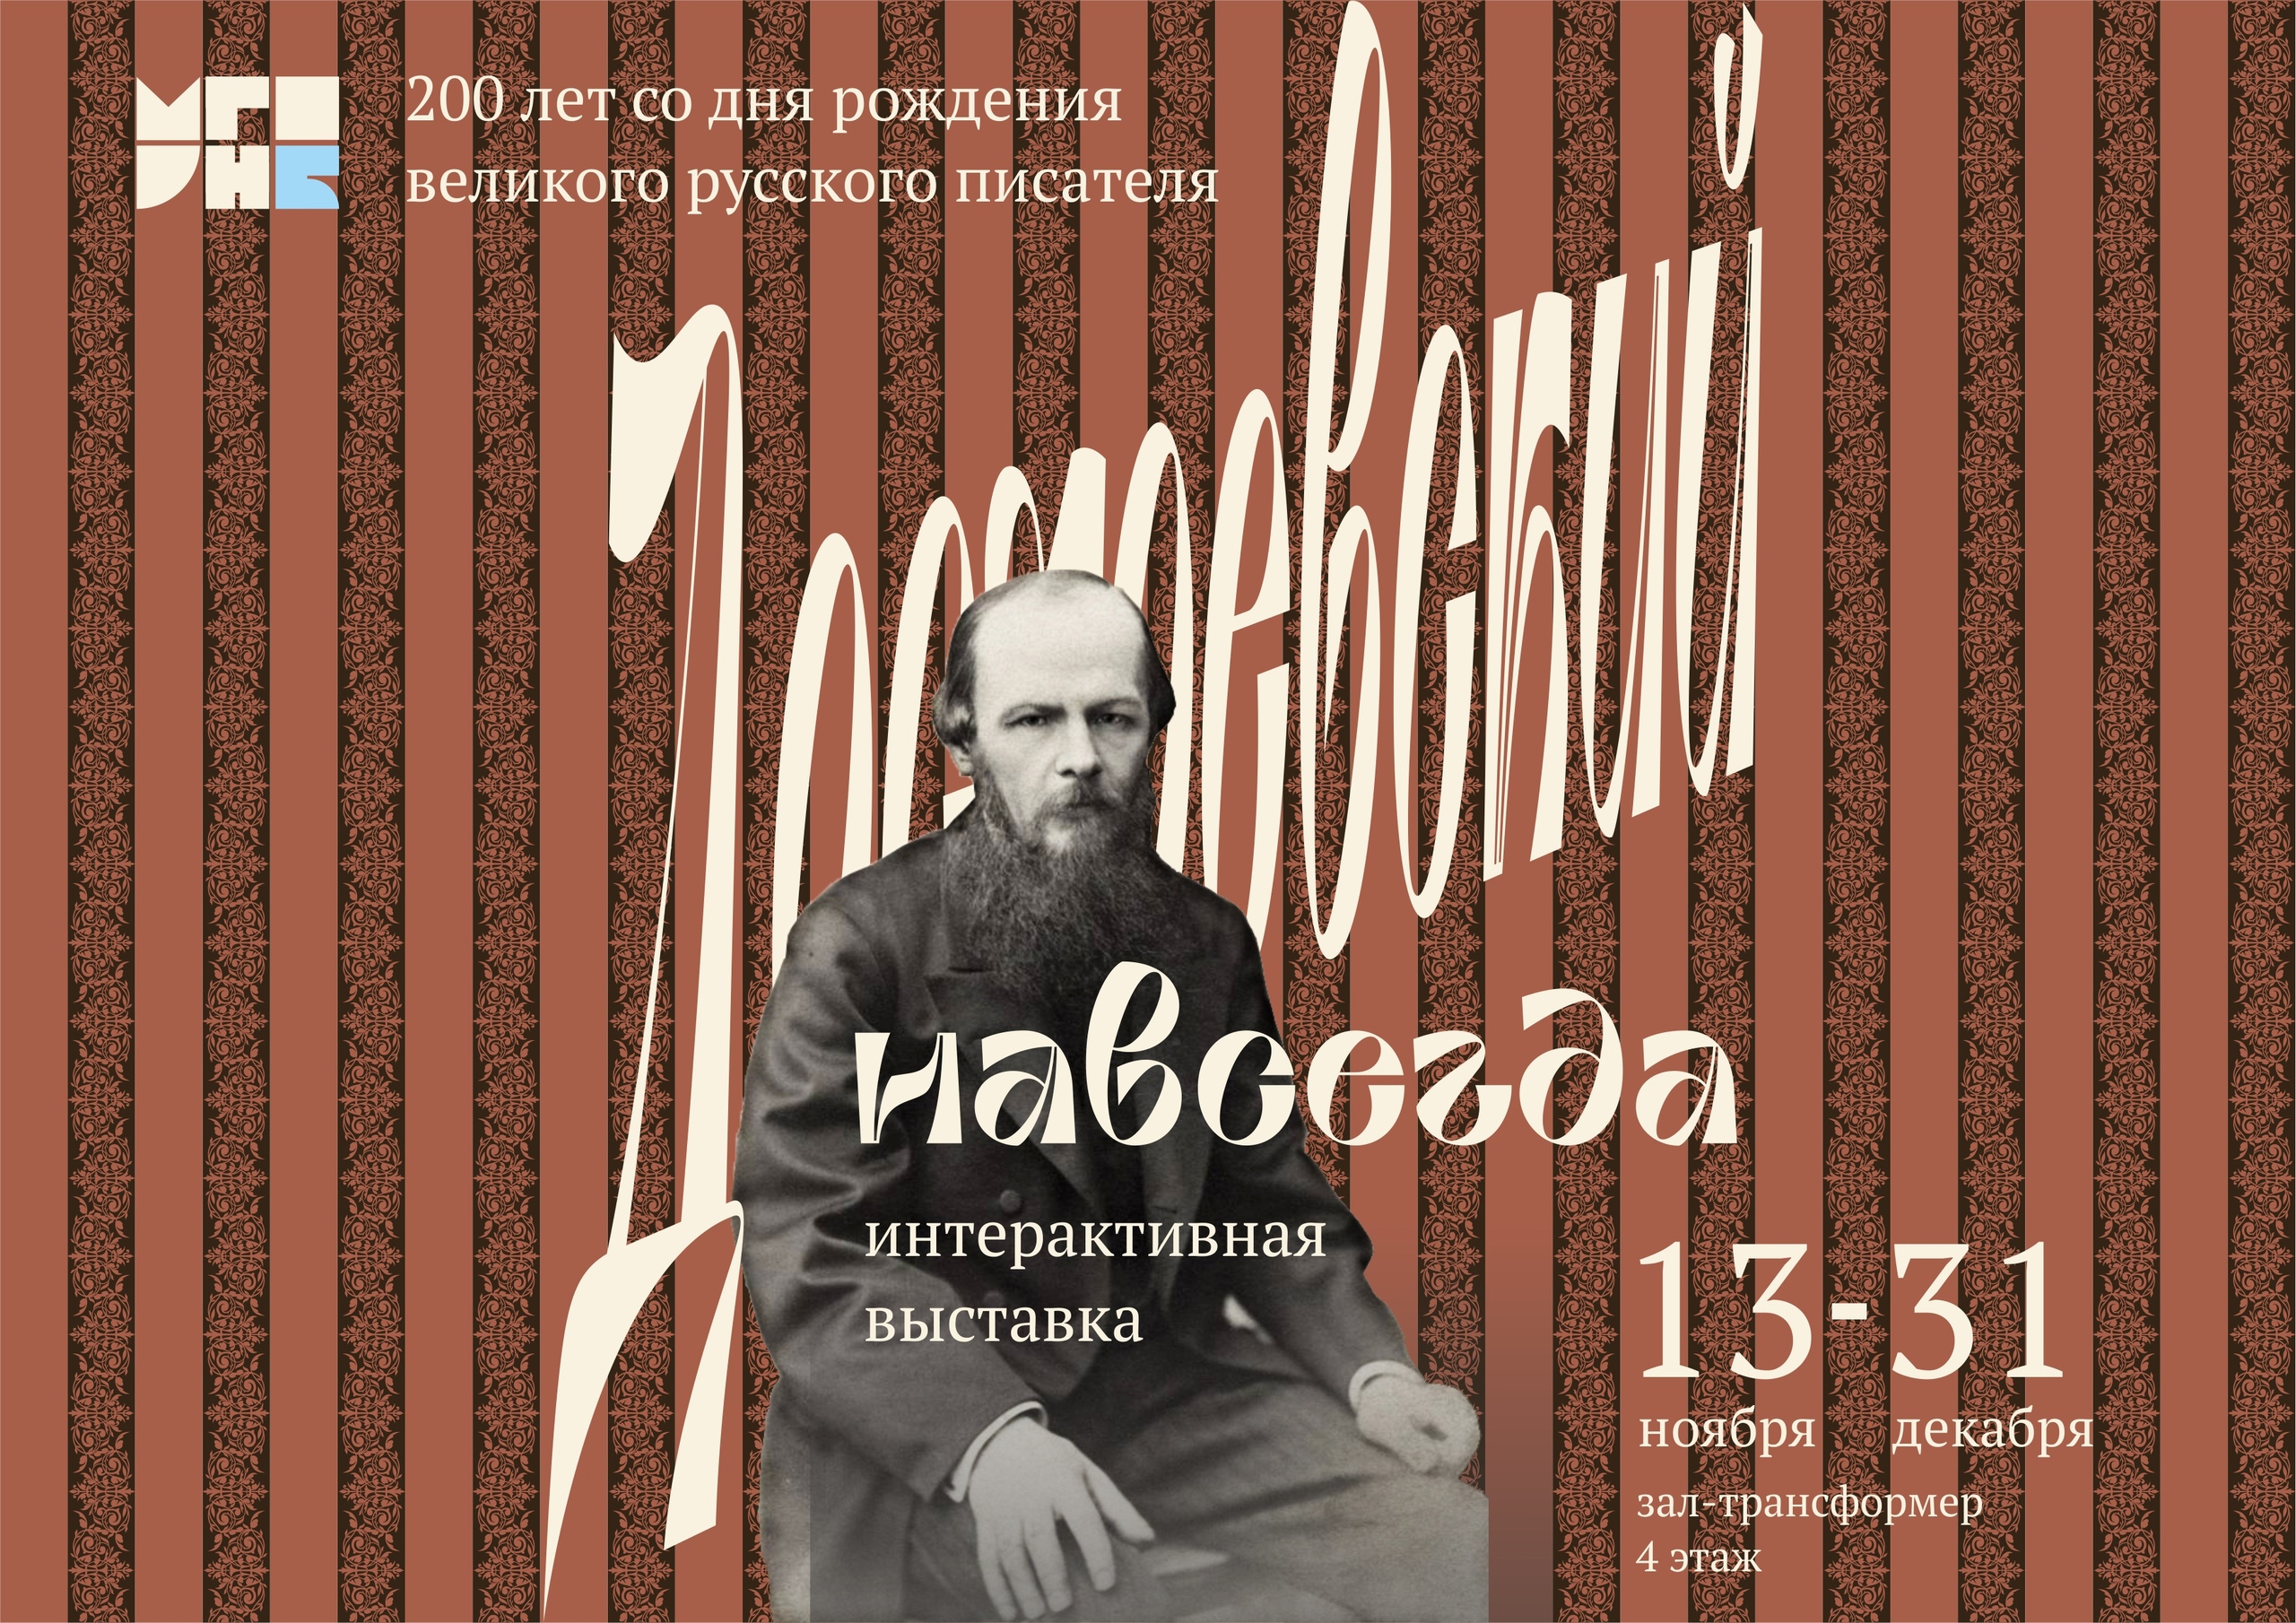 Интерактивная выставка к 200-летию со дня рождения Достоевского открылась в Мурманске